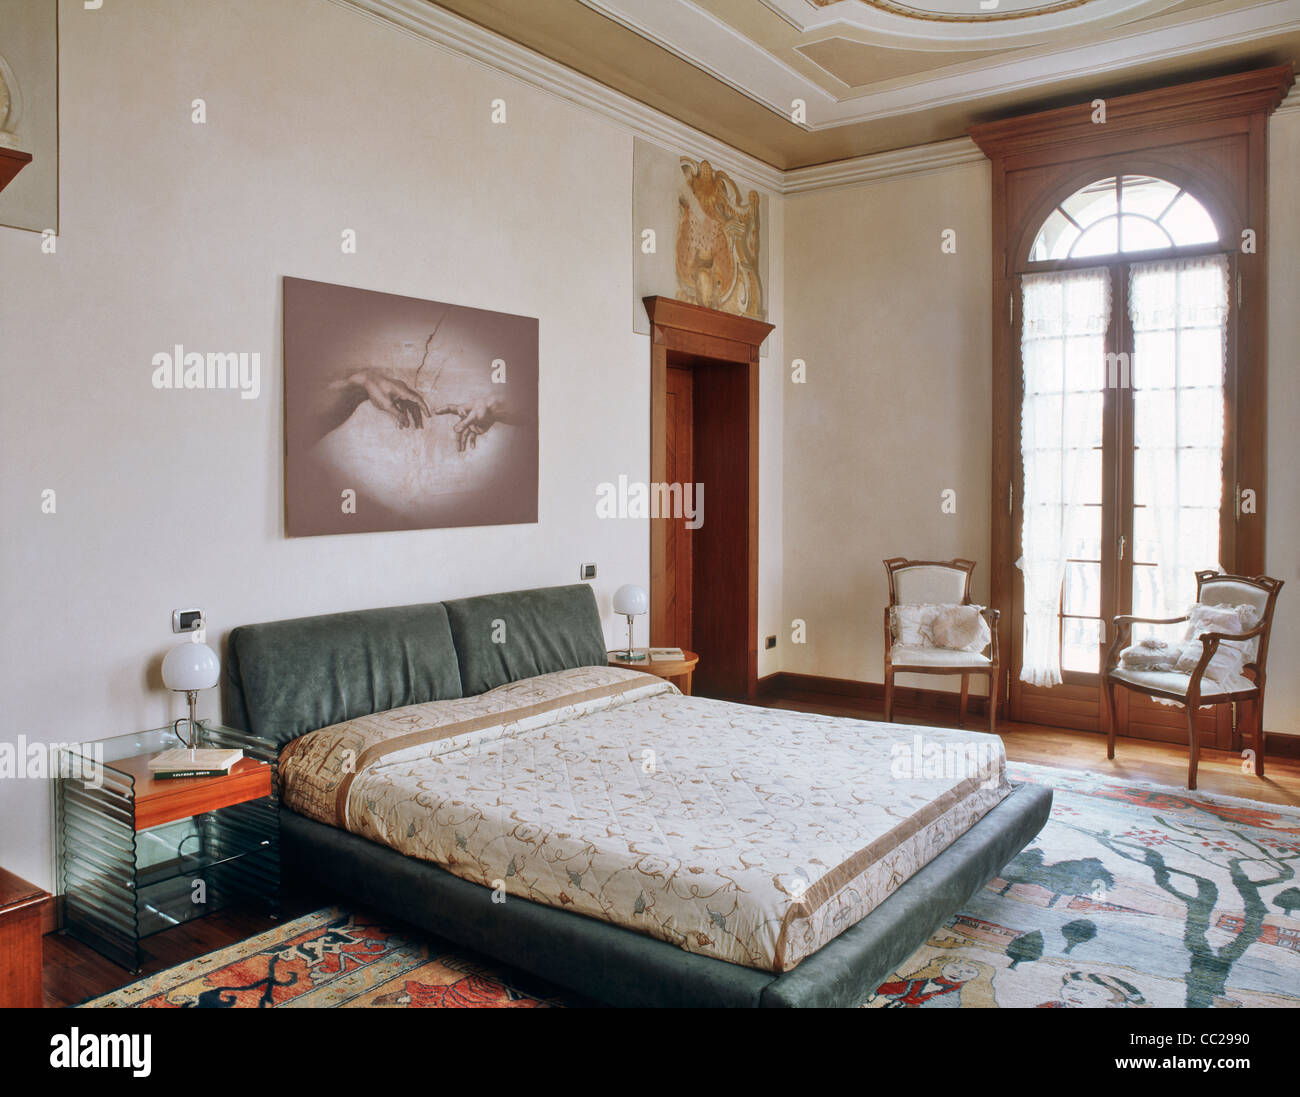 Grande camera da letto con affreschi e decorazioni, antico tappeto sul pavimento in legno e due piccoli poltroncina in legno vicino alla finestra Foto Stock